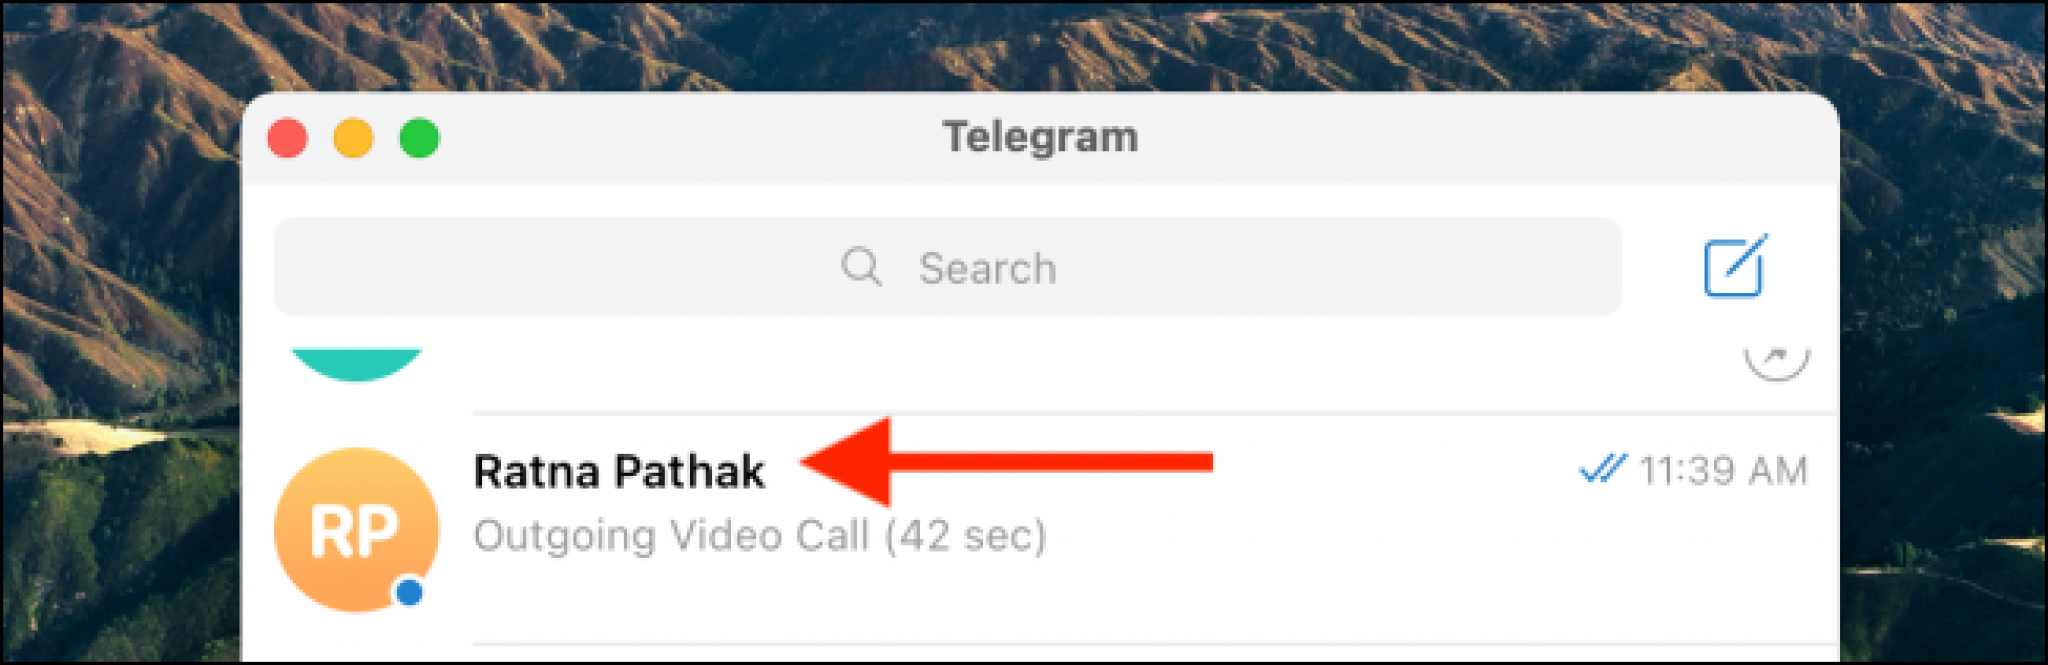 Как принять видеозвонок в телеграмме фото 84